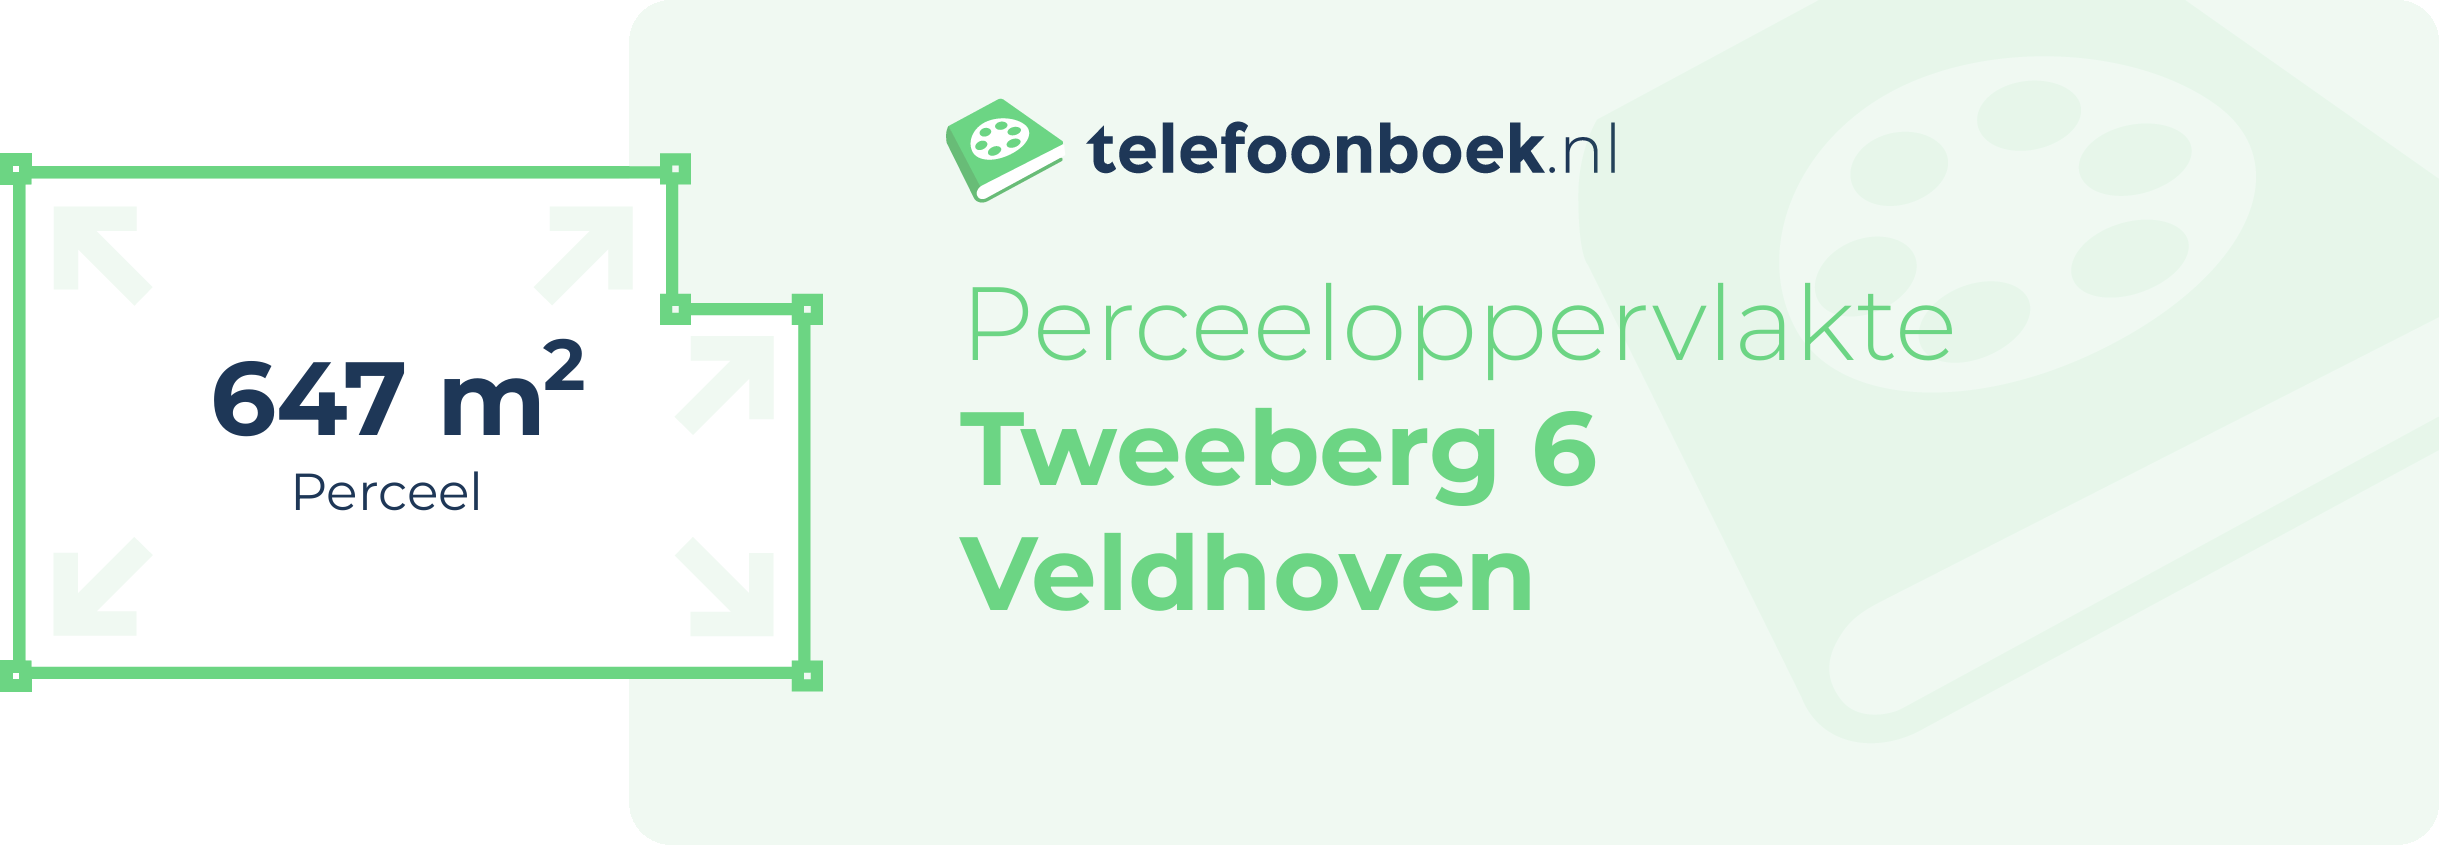 Perceeloppervlakte Tweeberg 6 Veldhoven